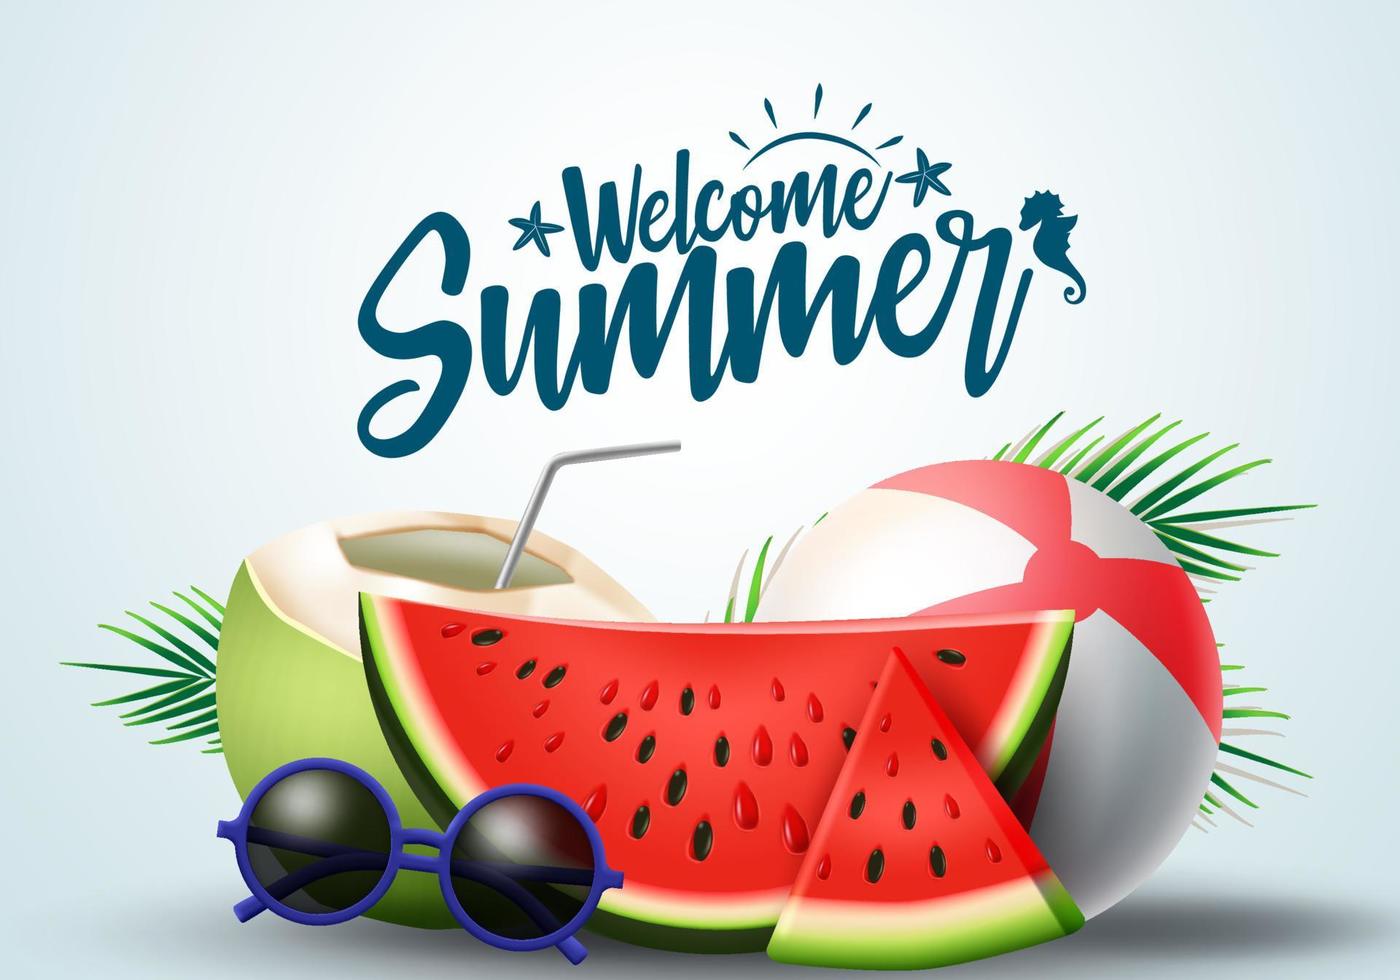 sommar hälsning vektor banner design. sommarens välkomsttext med tropiska frukter som vattenmelon, kokosjuice och strandelement i vit bakgrund. vektor illustration.